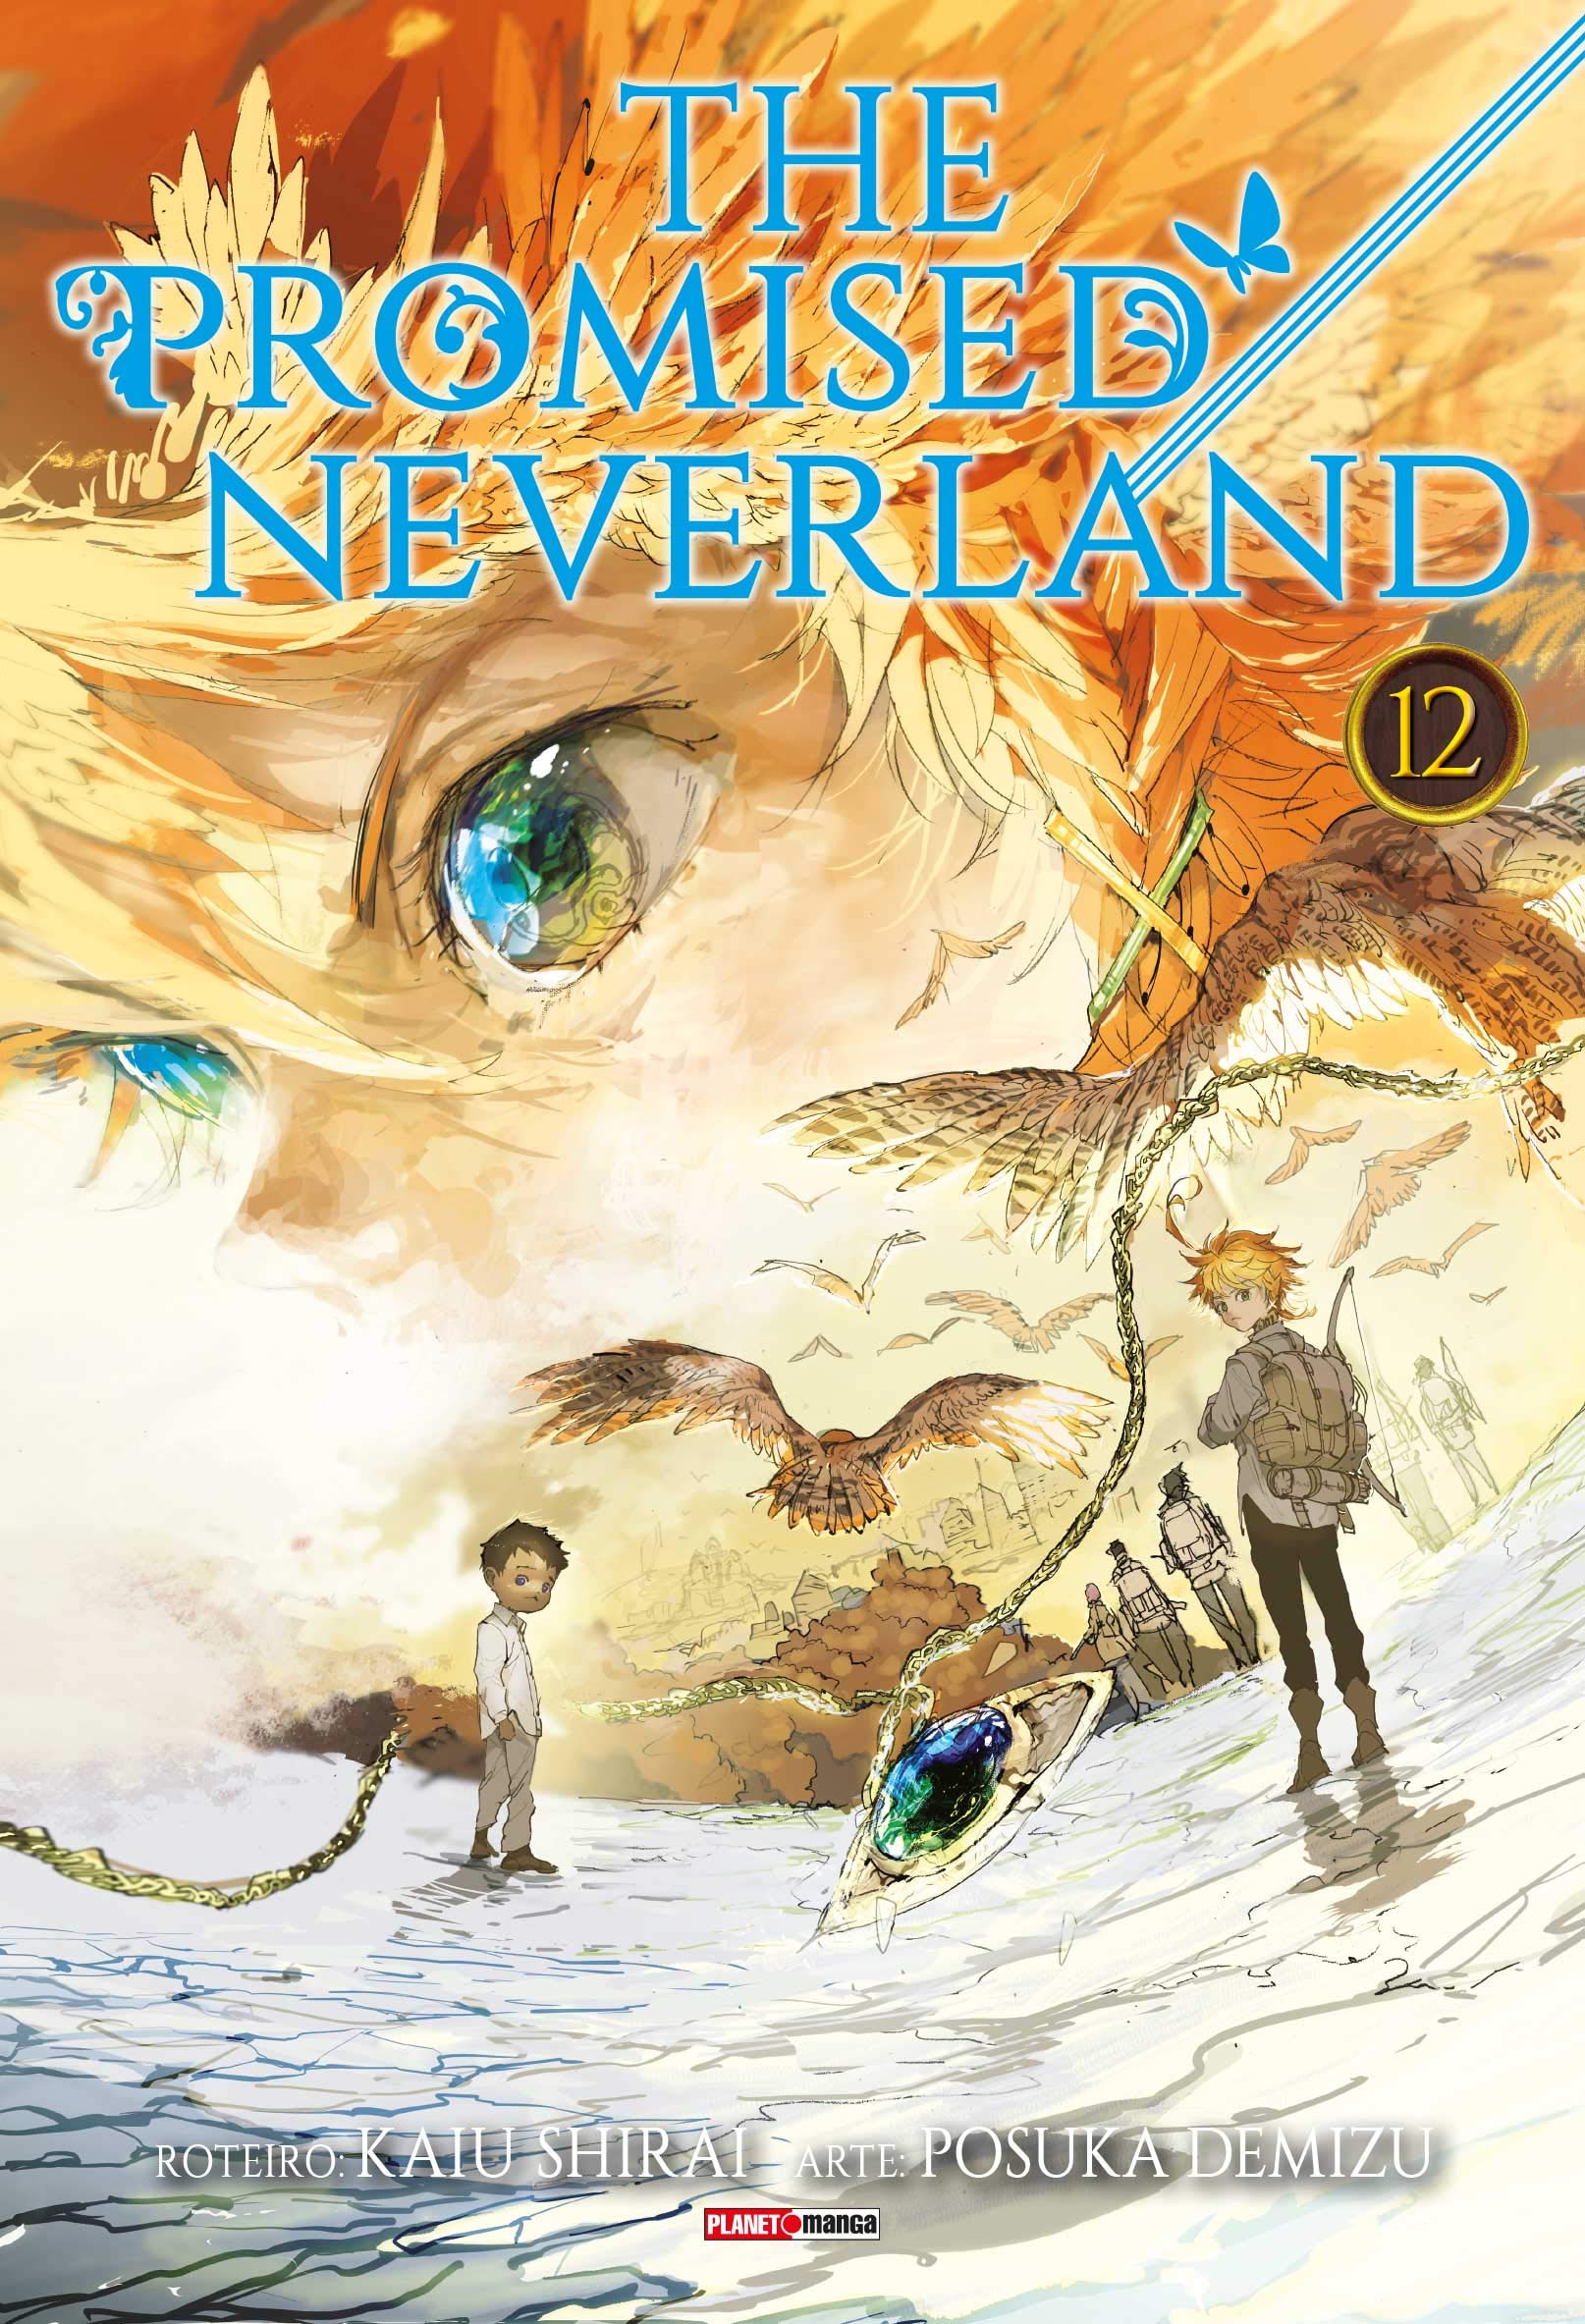 Mangá de 'The Promised Neverland' ganhará mais um capítulo especial